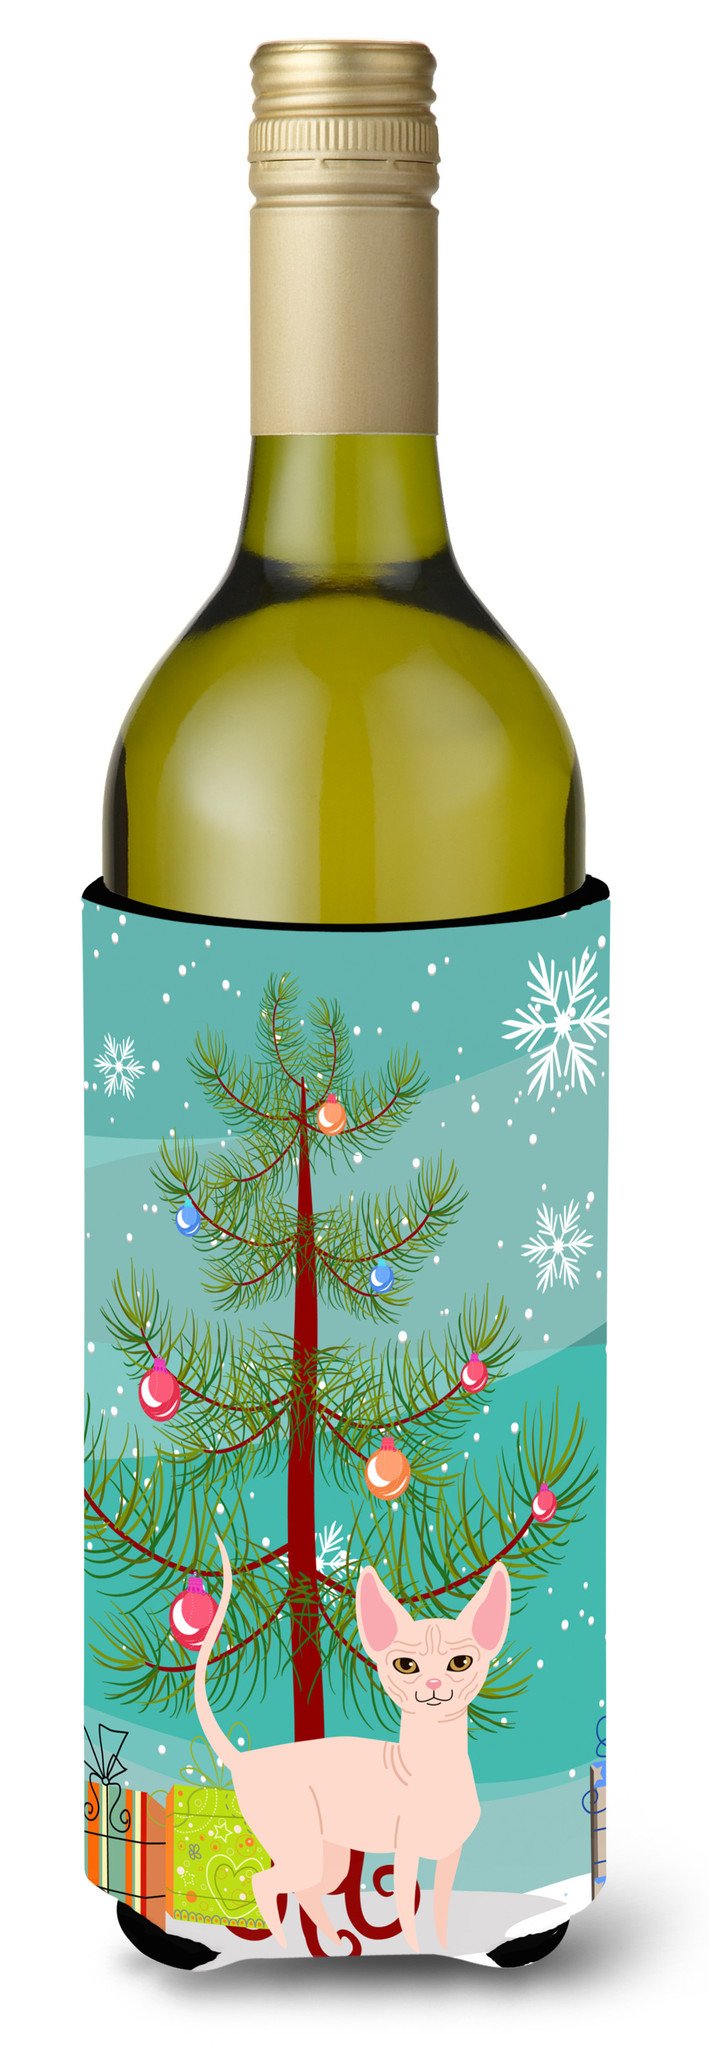 Sphynx Cat Merry Christmas Tree Wine Bottle Beverge Insulator Hugger BB4432LITERK by Caroline's Treasures